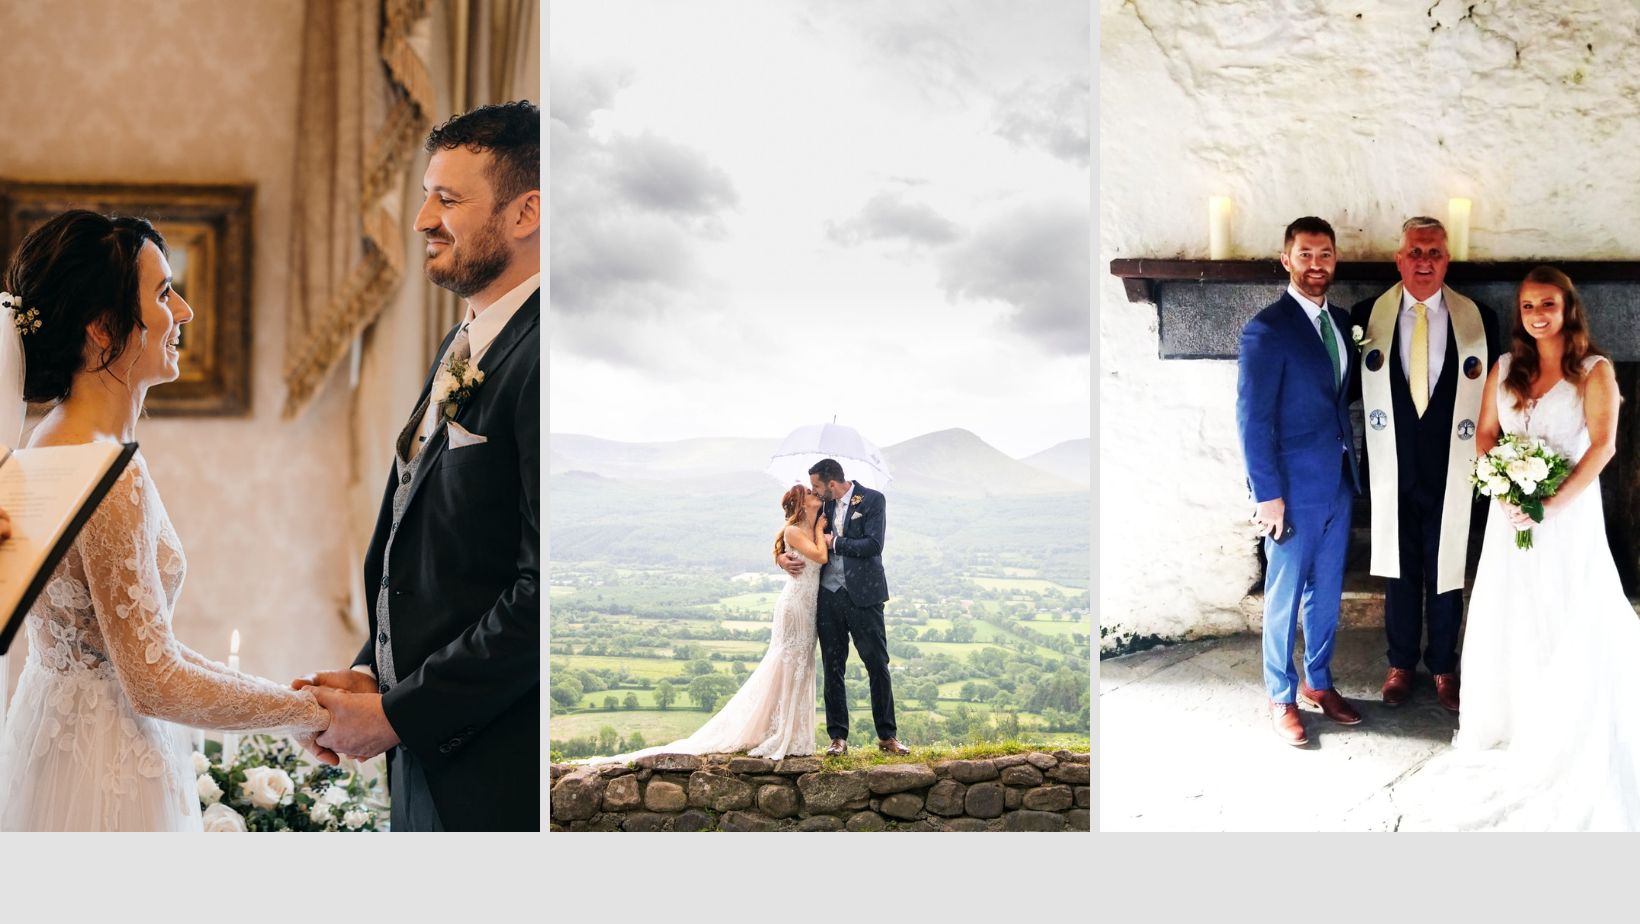 Wedding Services in Ireland